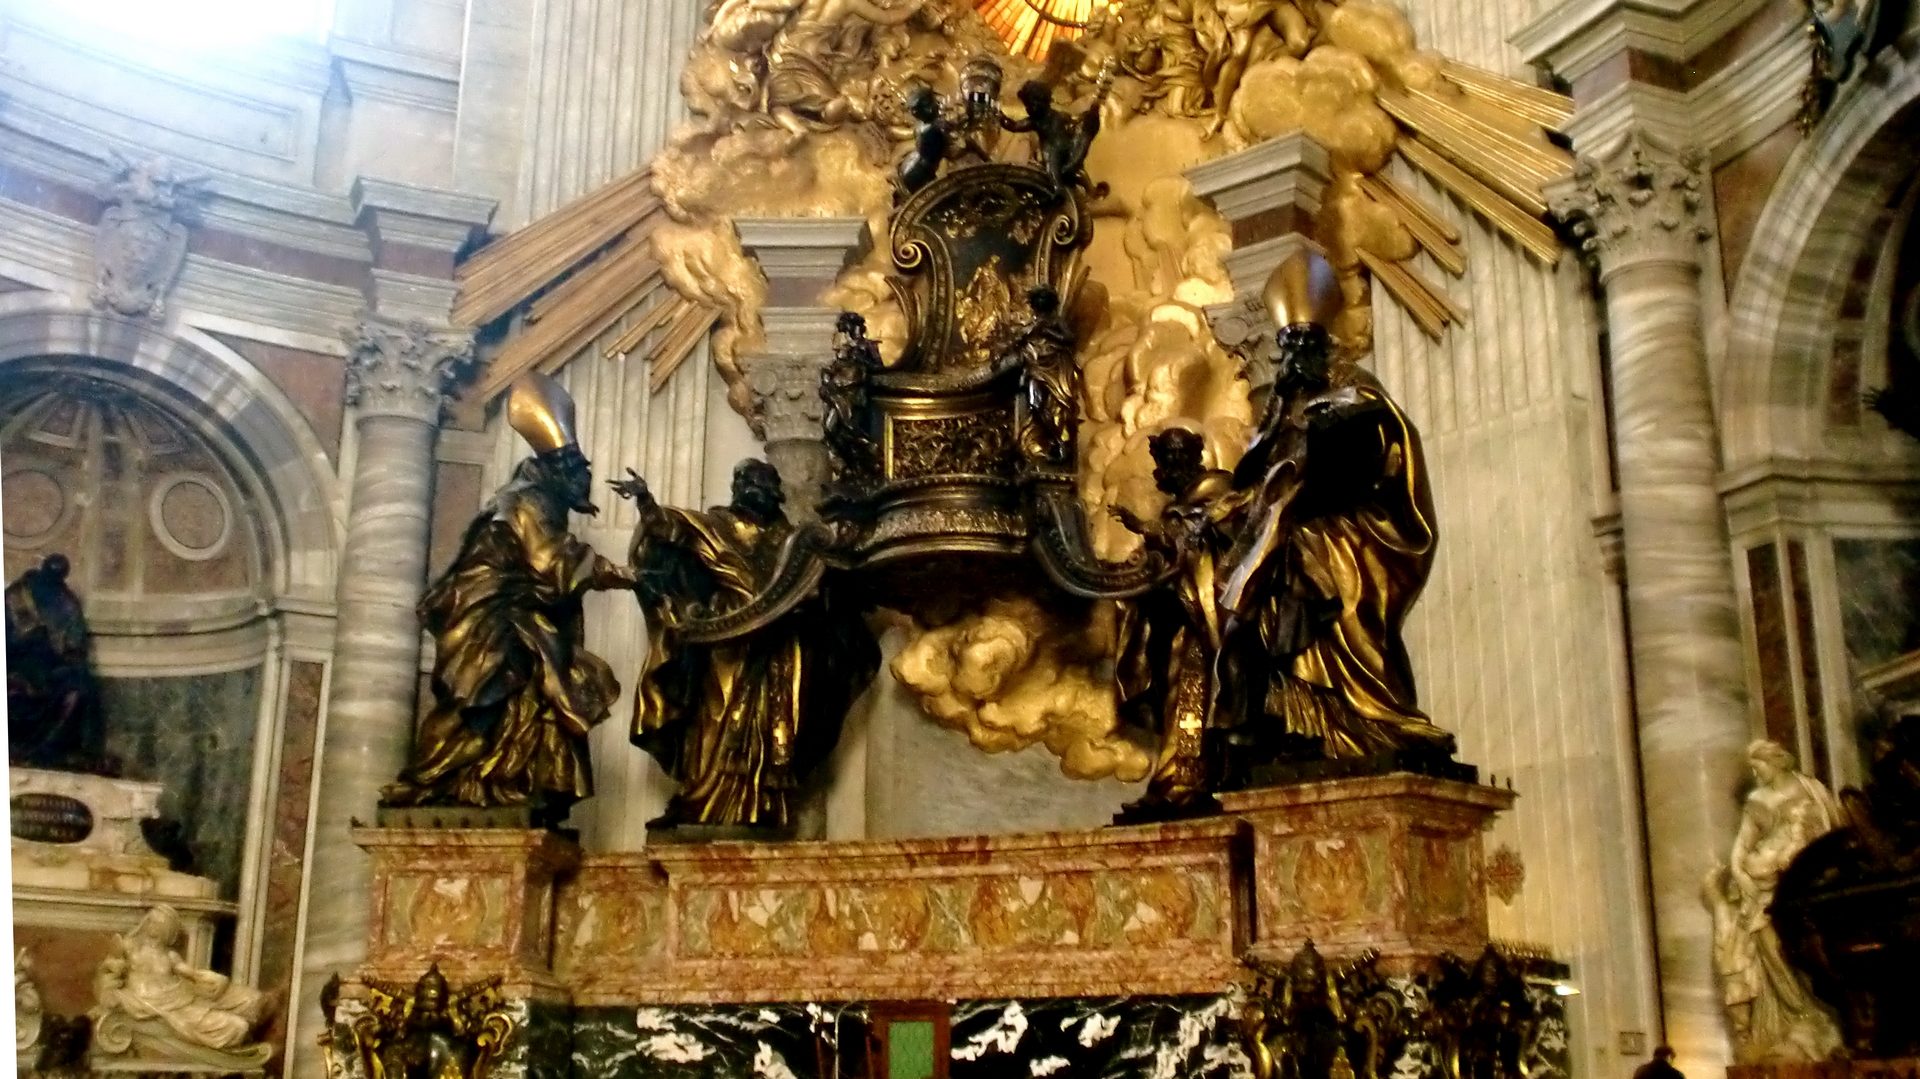 Les ors de la basilique Saint Pierre de Rome cristallisent les critiques sur la richesse de l'Eglise  (photo DR)